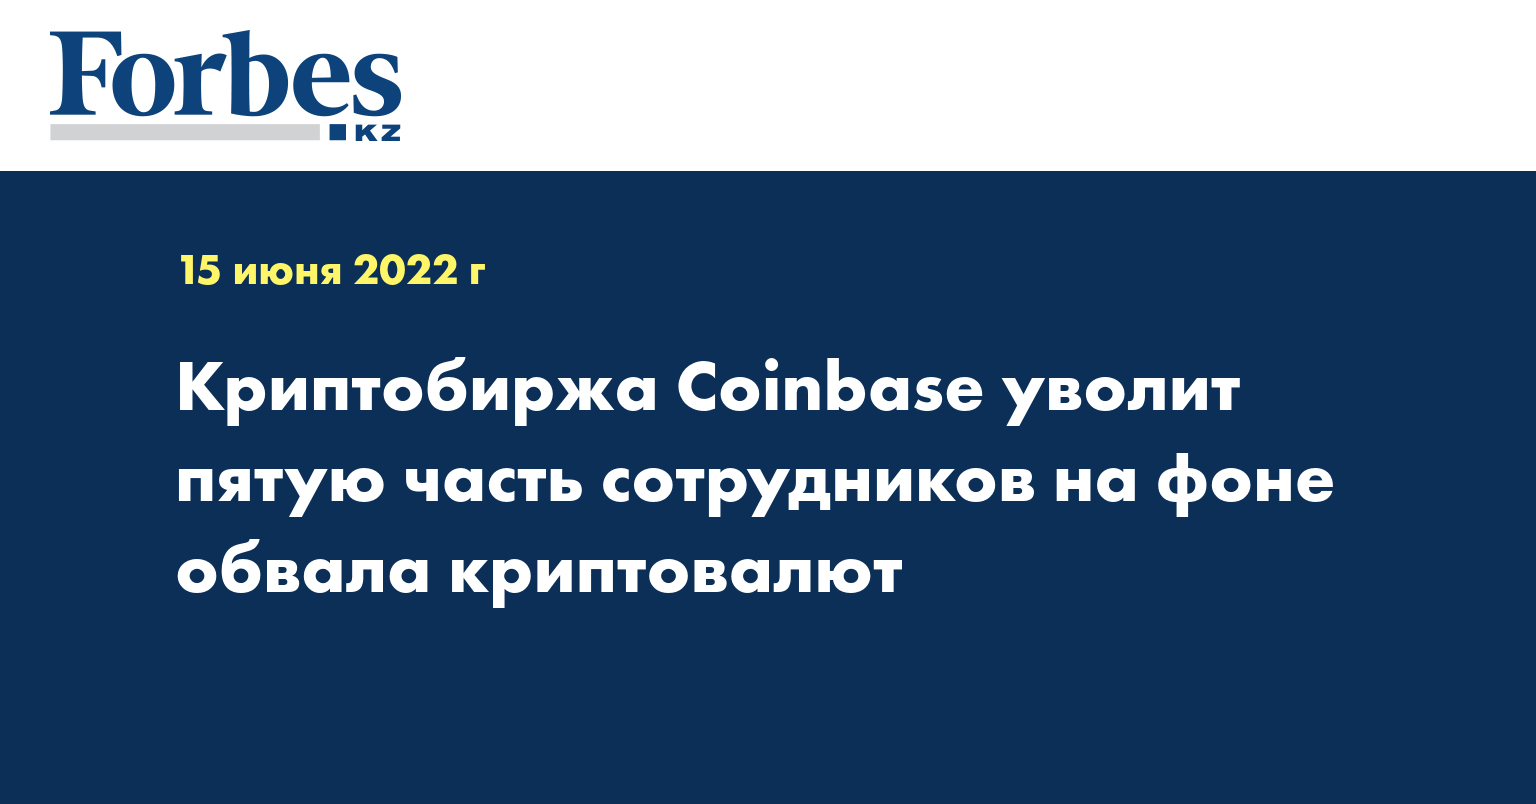 Криптобиржа Coinbase уволит пятую часть сотрудников на фоне обвала криптовалют